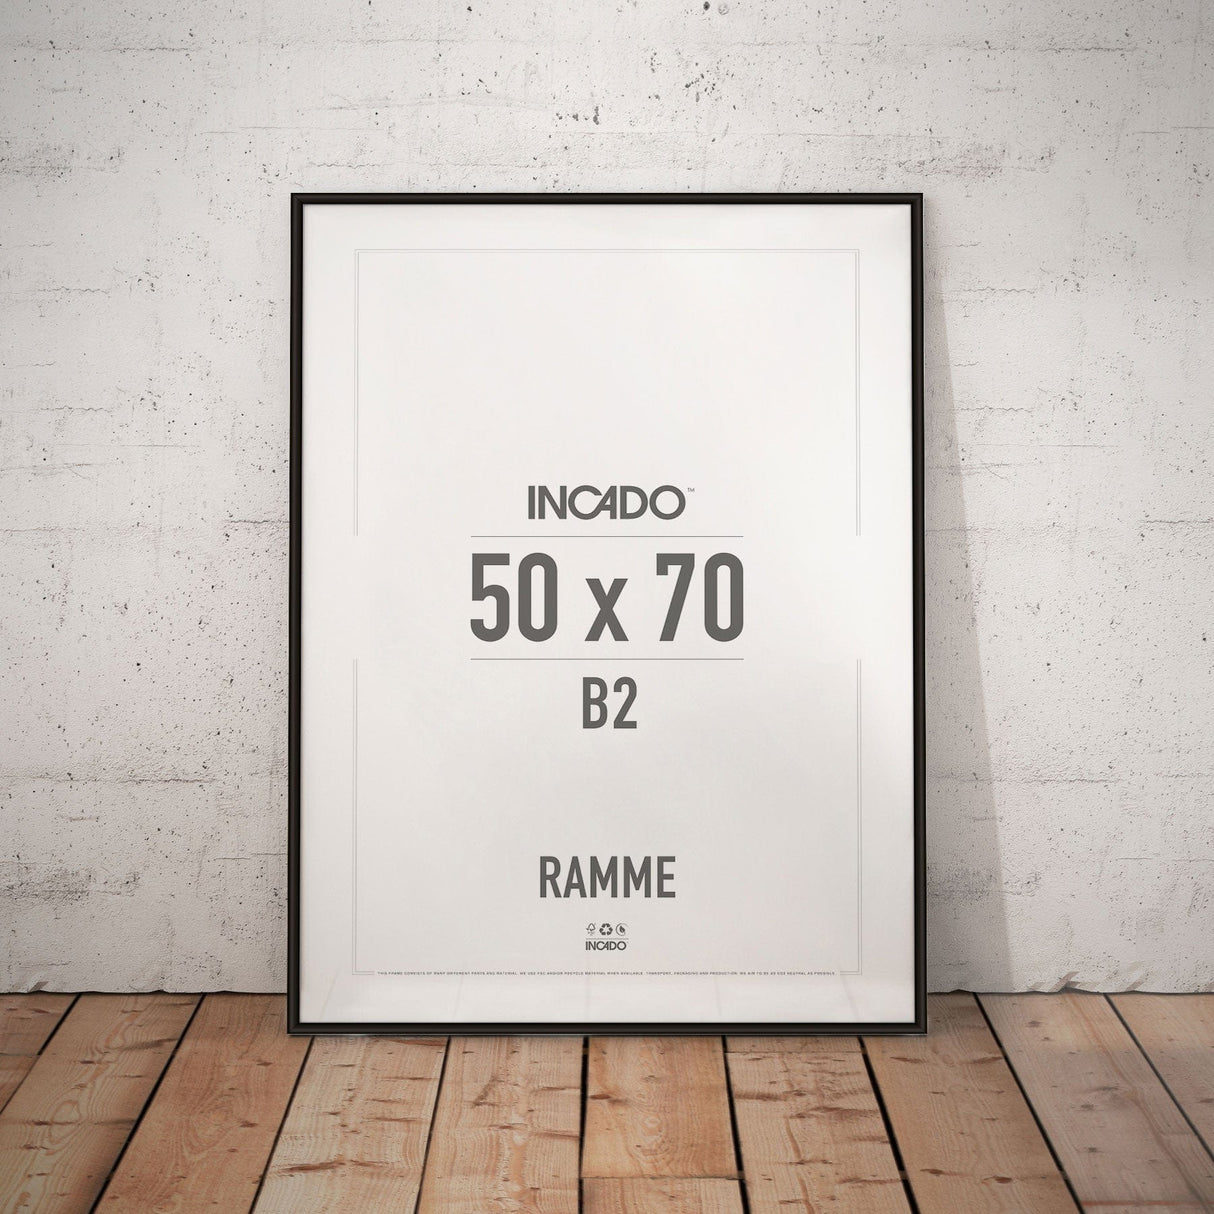 Sort aluminiumsramme - Incado NordicLine - 50 x 70 cm